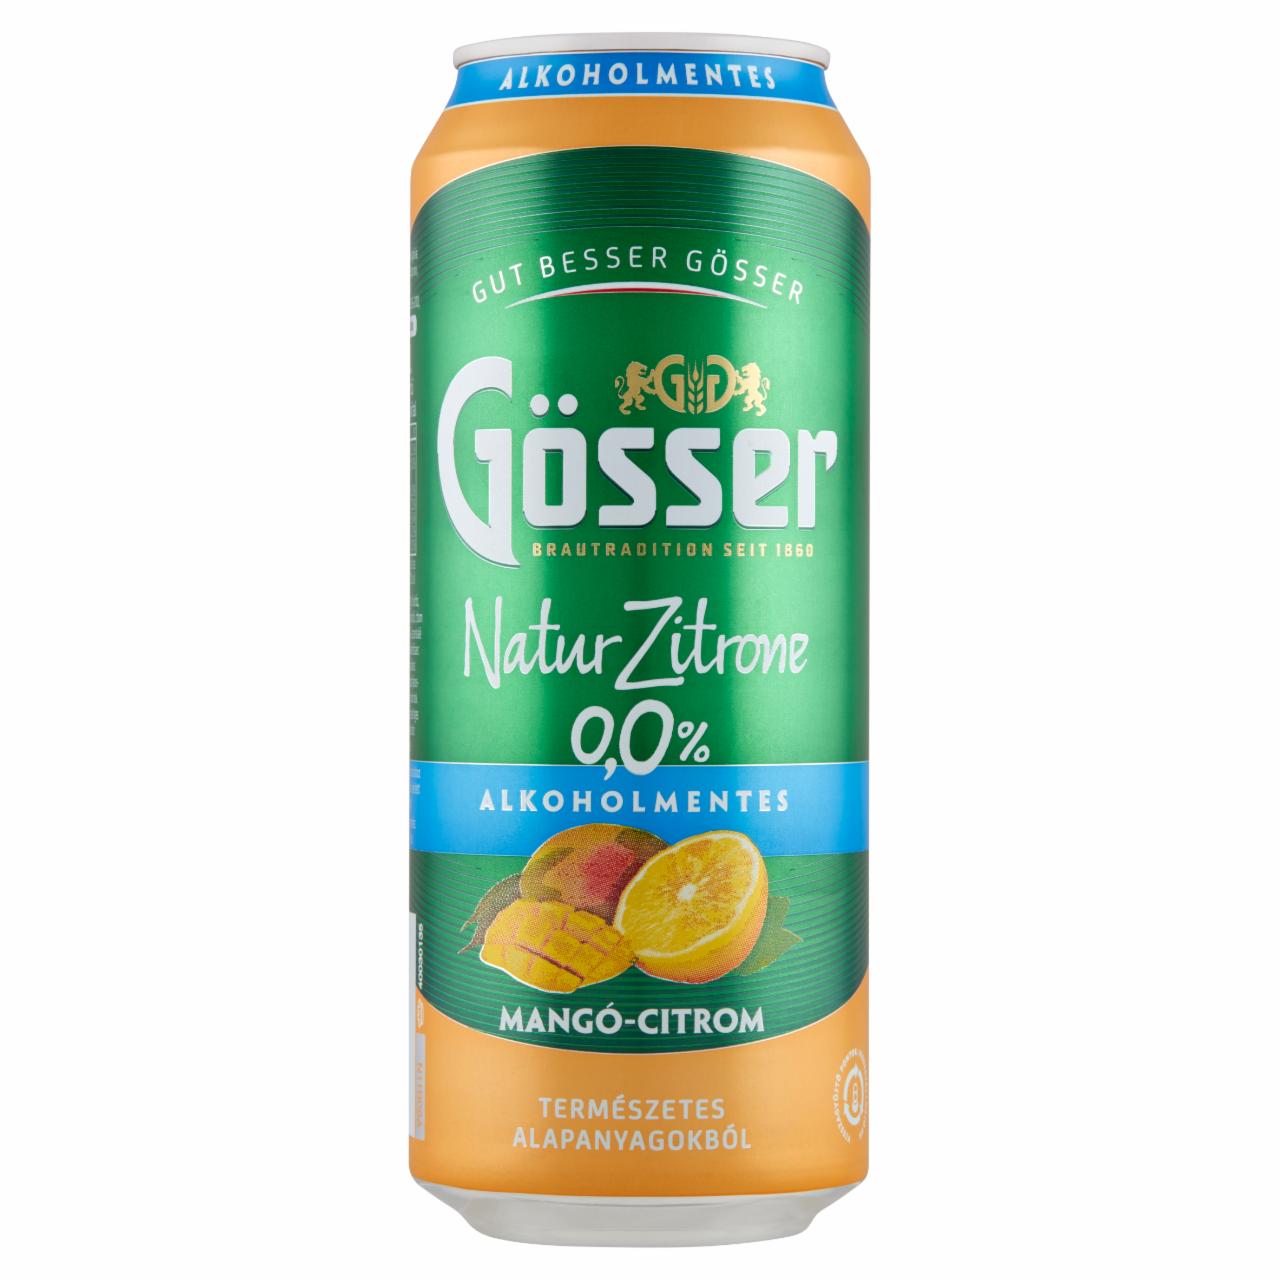 Képek - Gösser Natur Zitrone mangó-citrom ízű alkoholmentes sörital 0,0% 0,5 l doboz